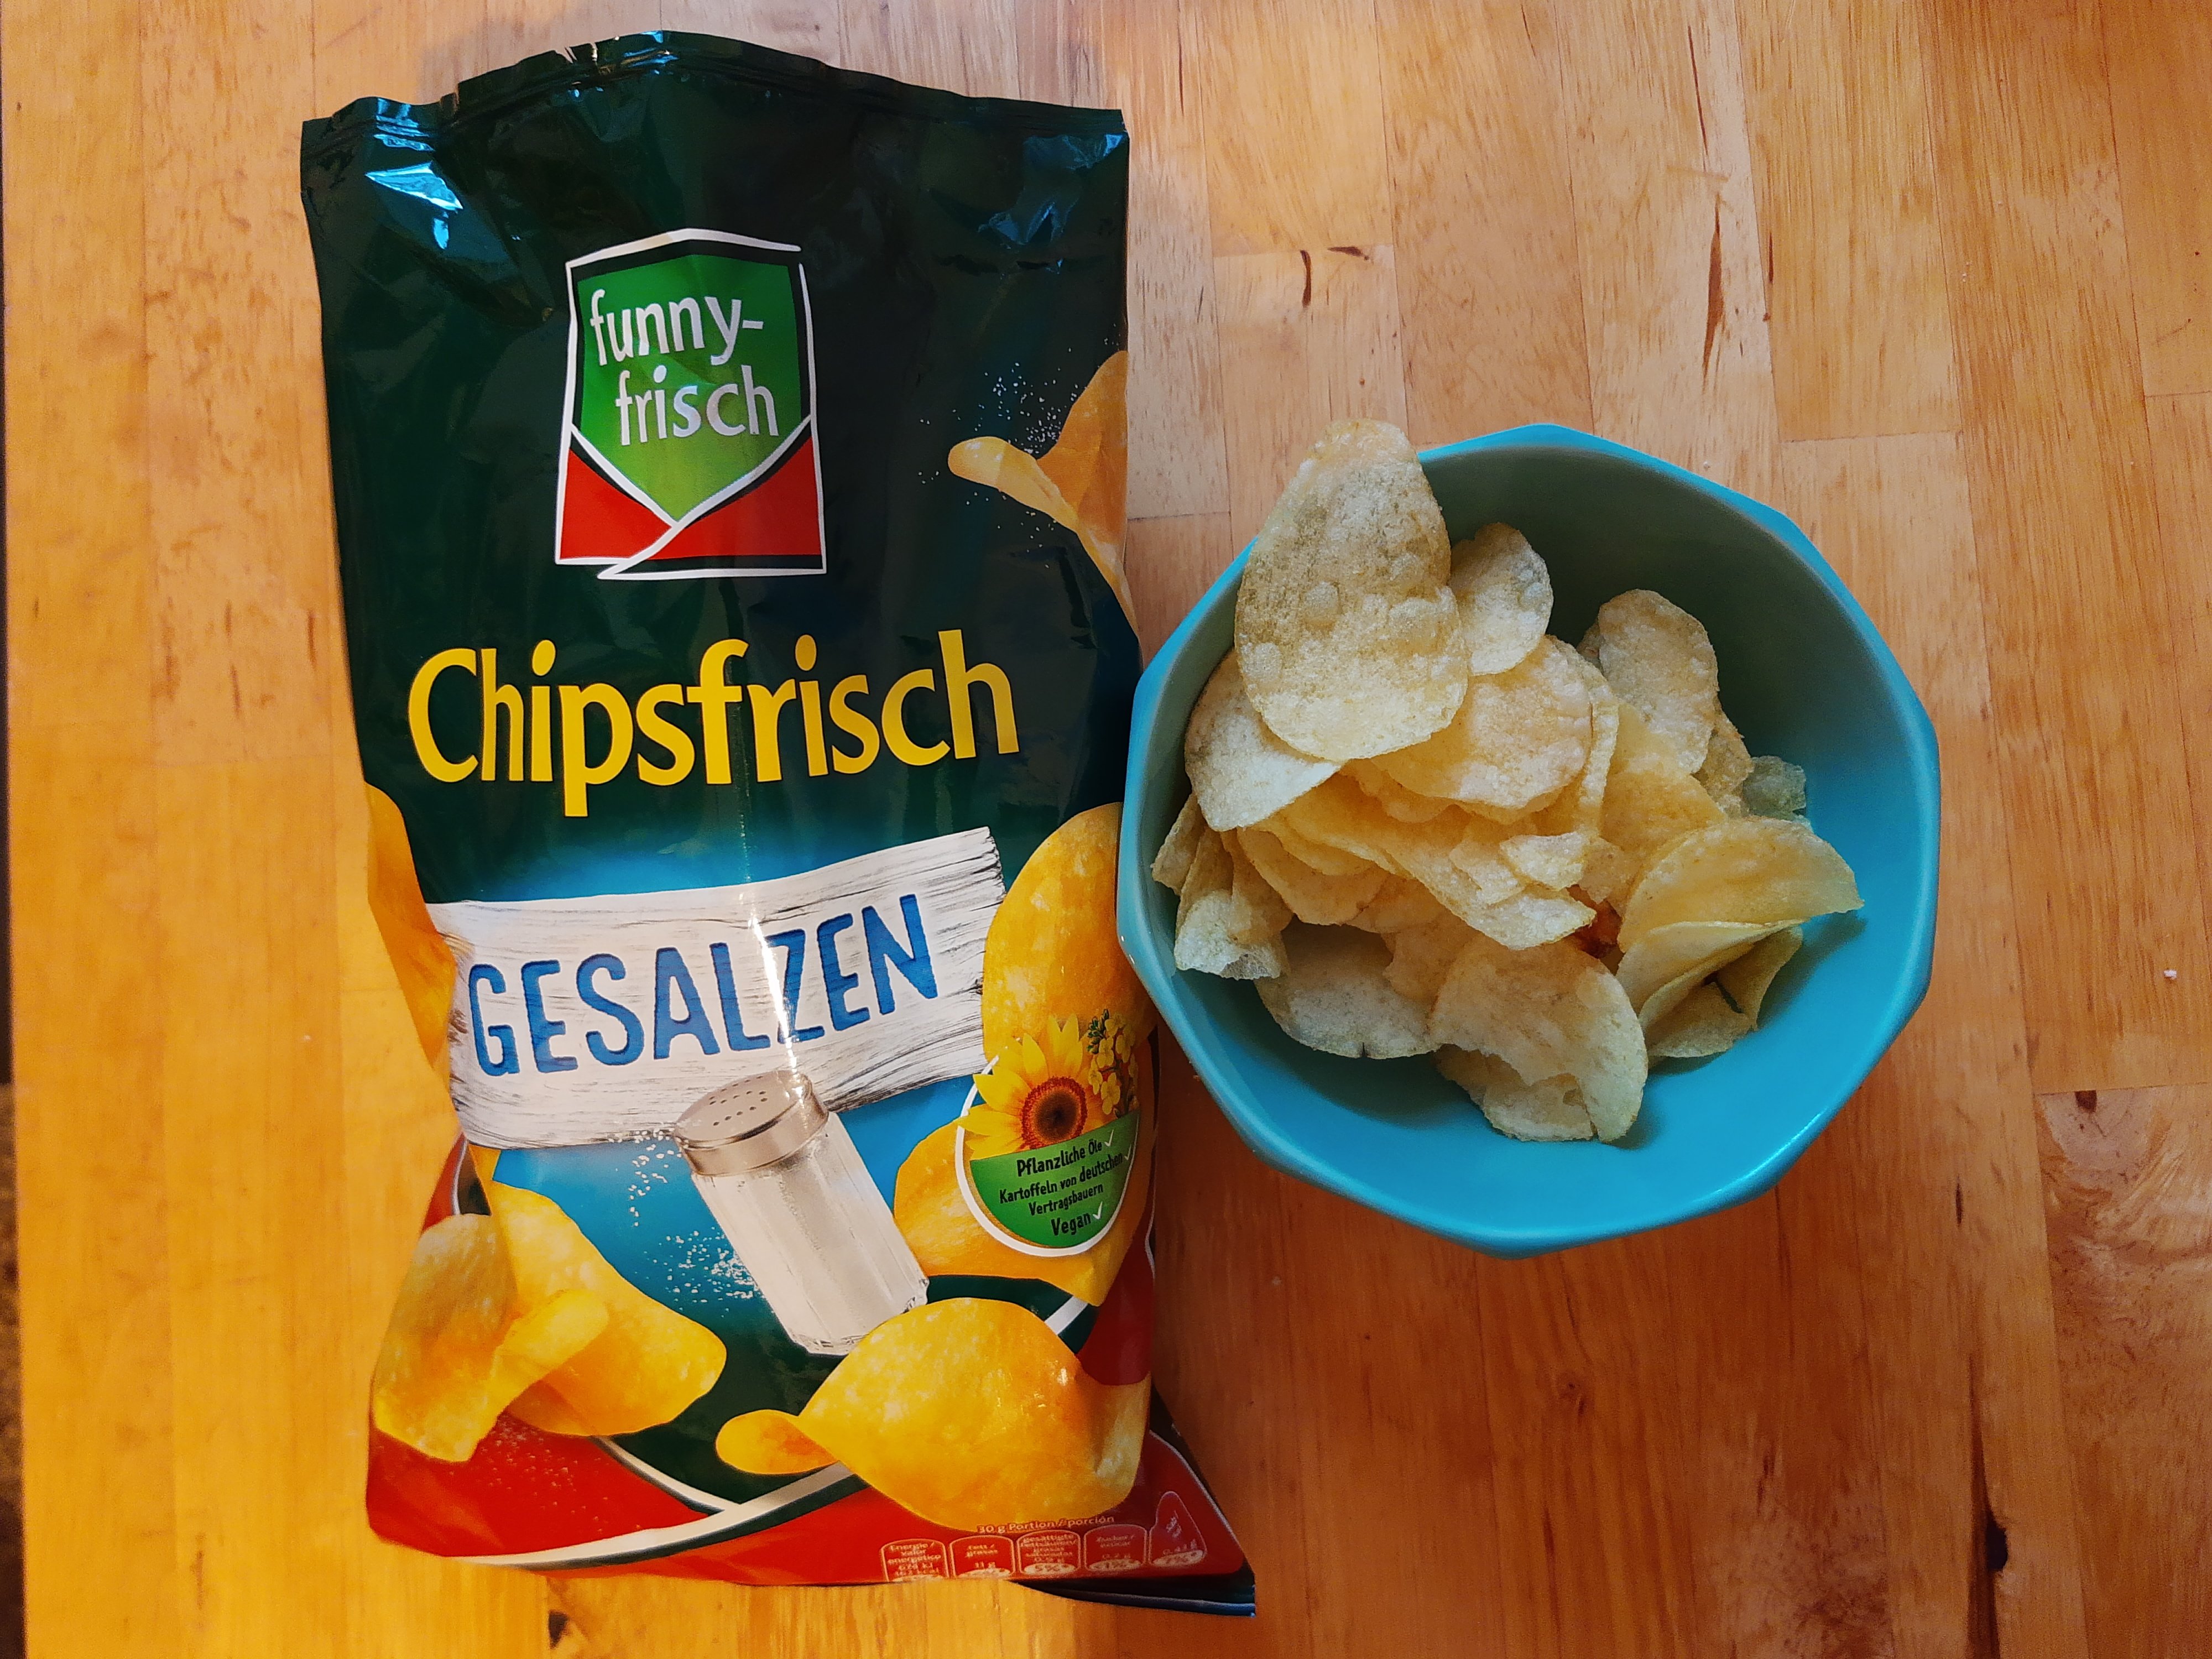 Chipsfrisch vegane Chips im Test